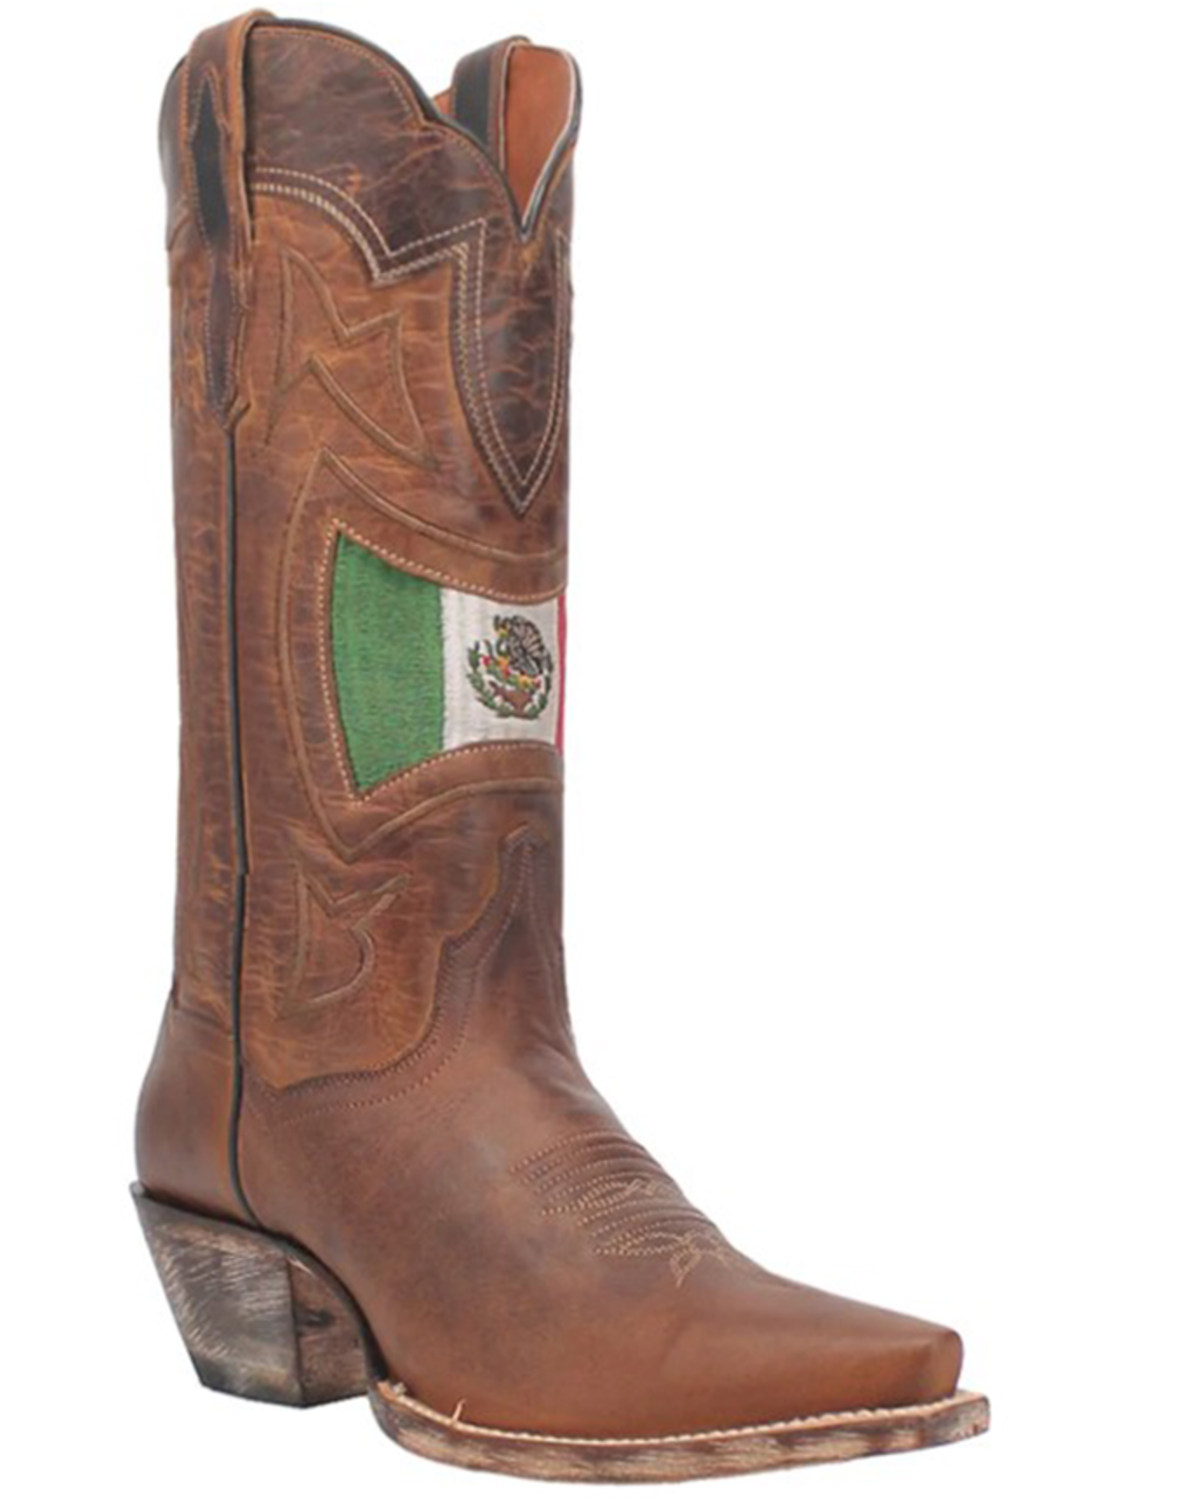 Dan Post Women's Corazon Western Boots - Snip Toe